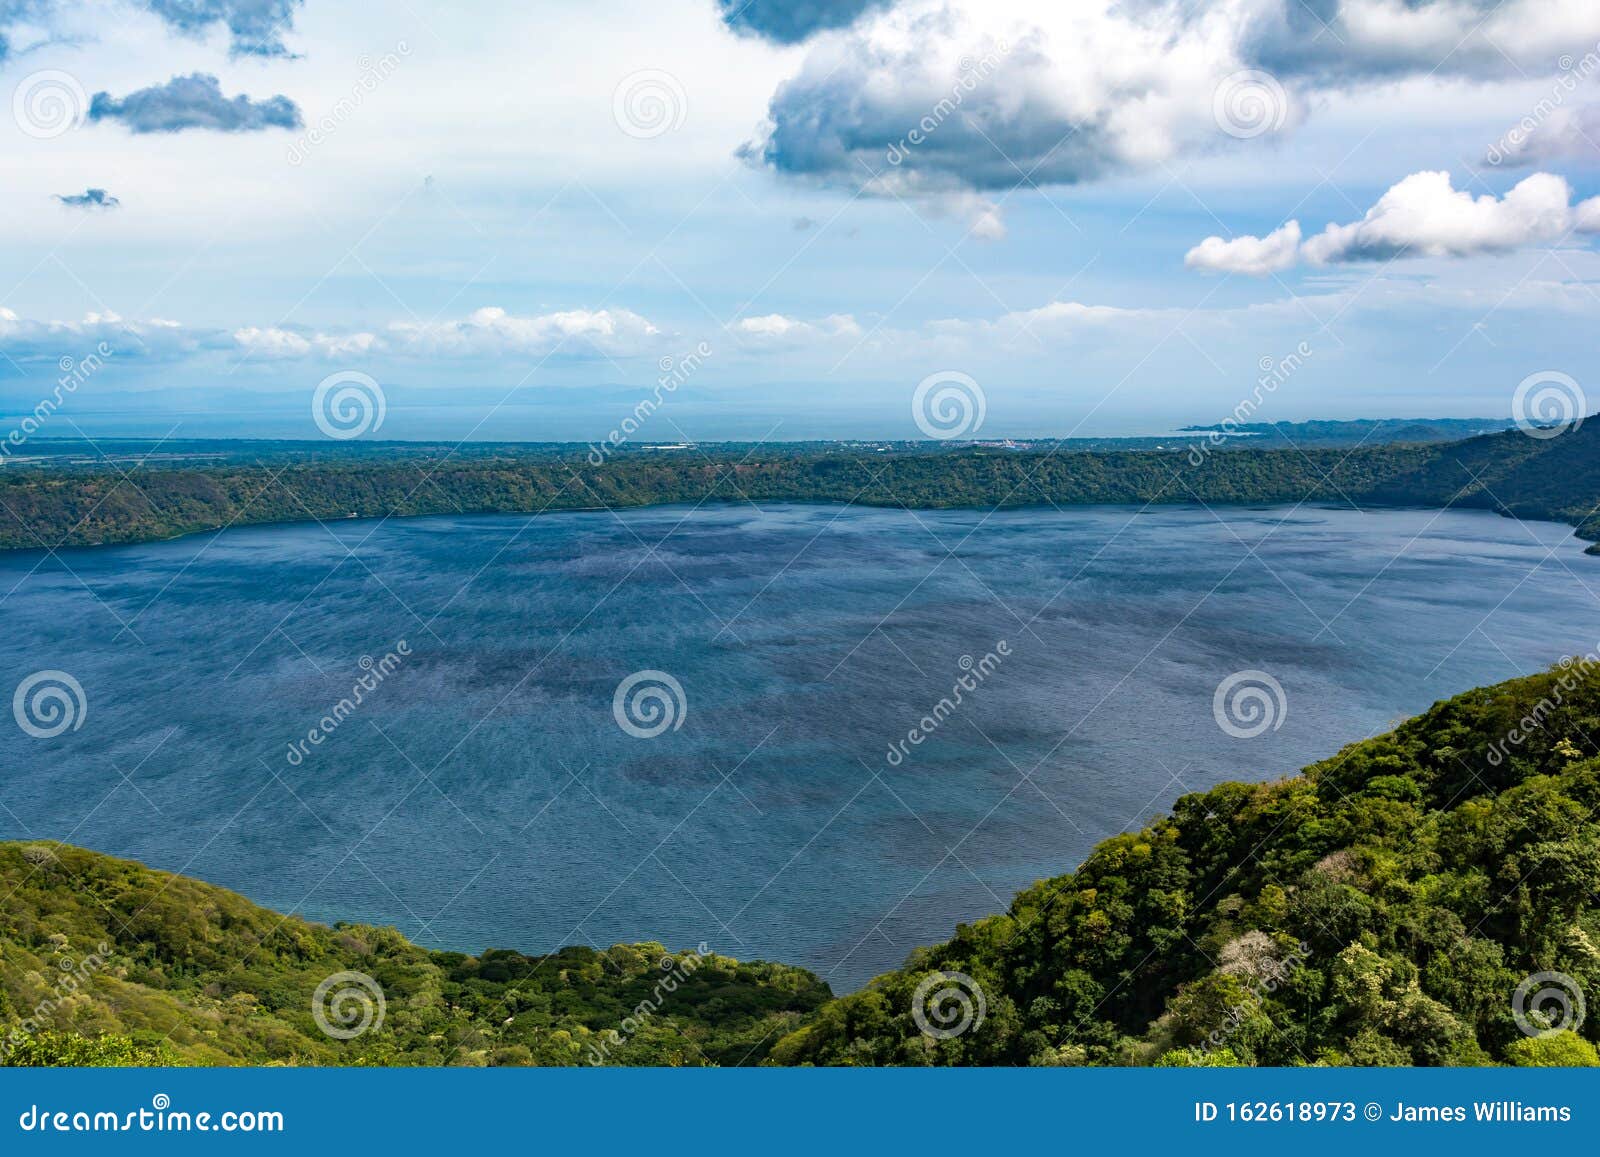 apoyo lagoon in tropical nicaragua